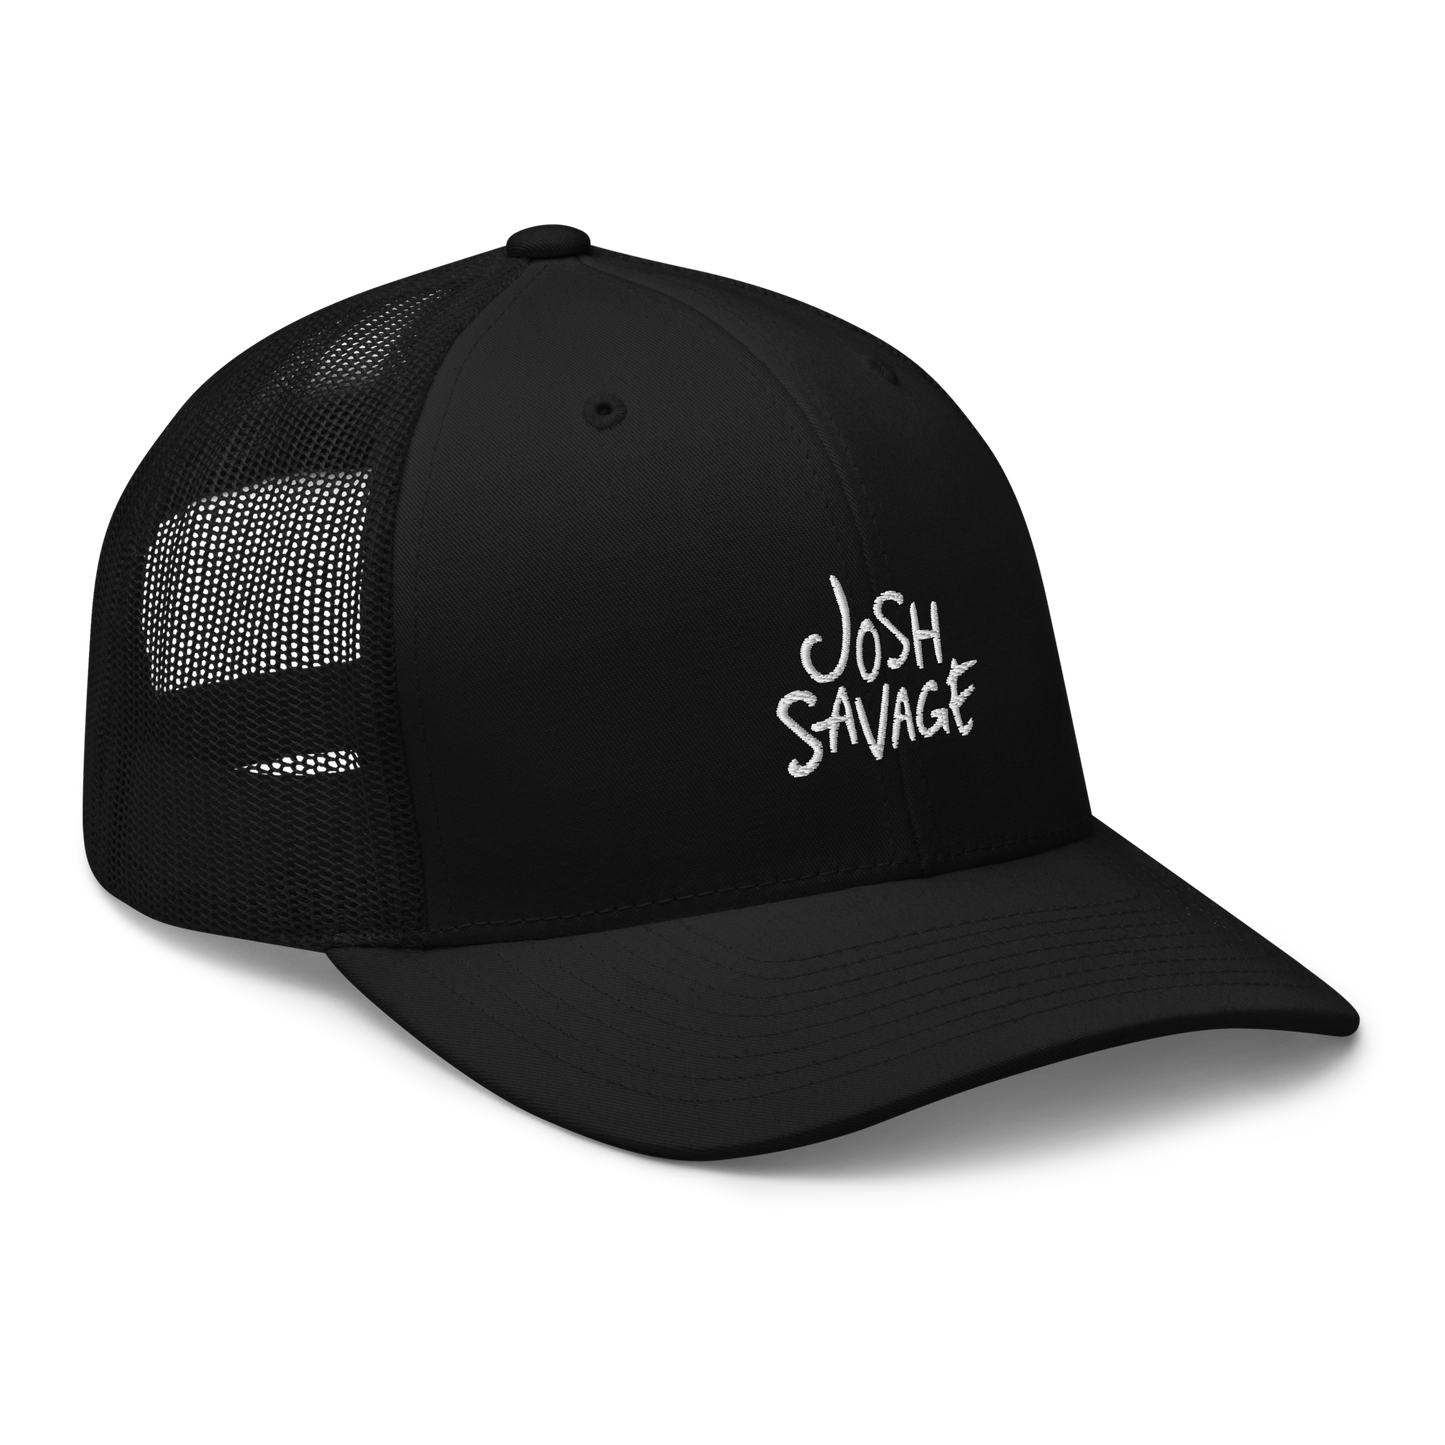 Josh Savage Trucker Hat